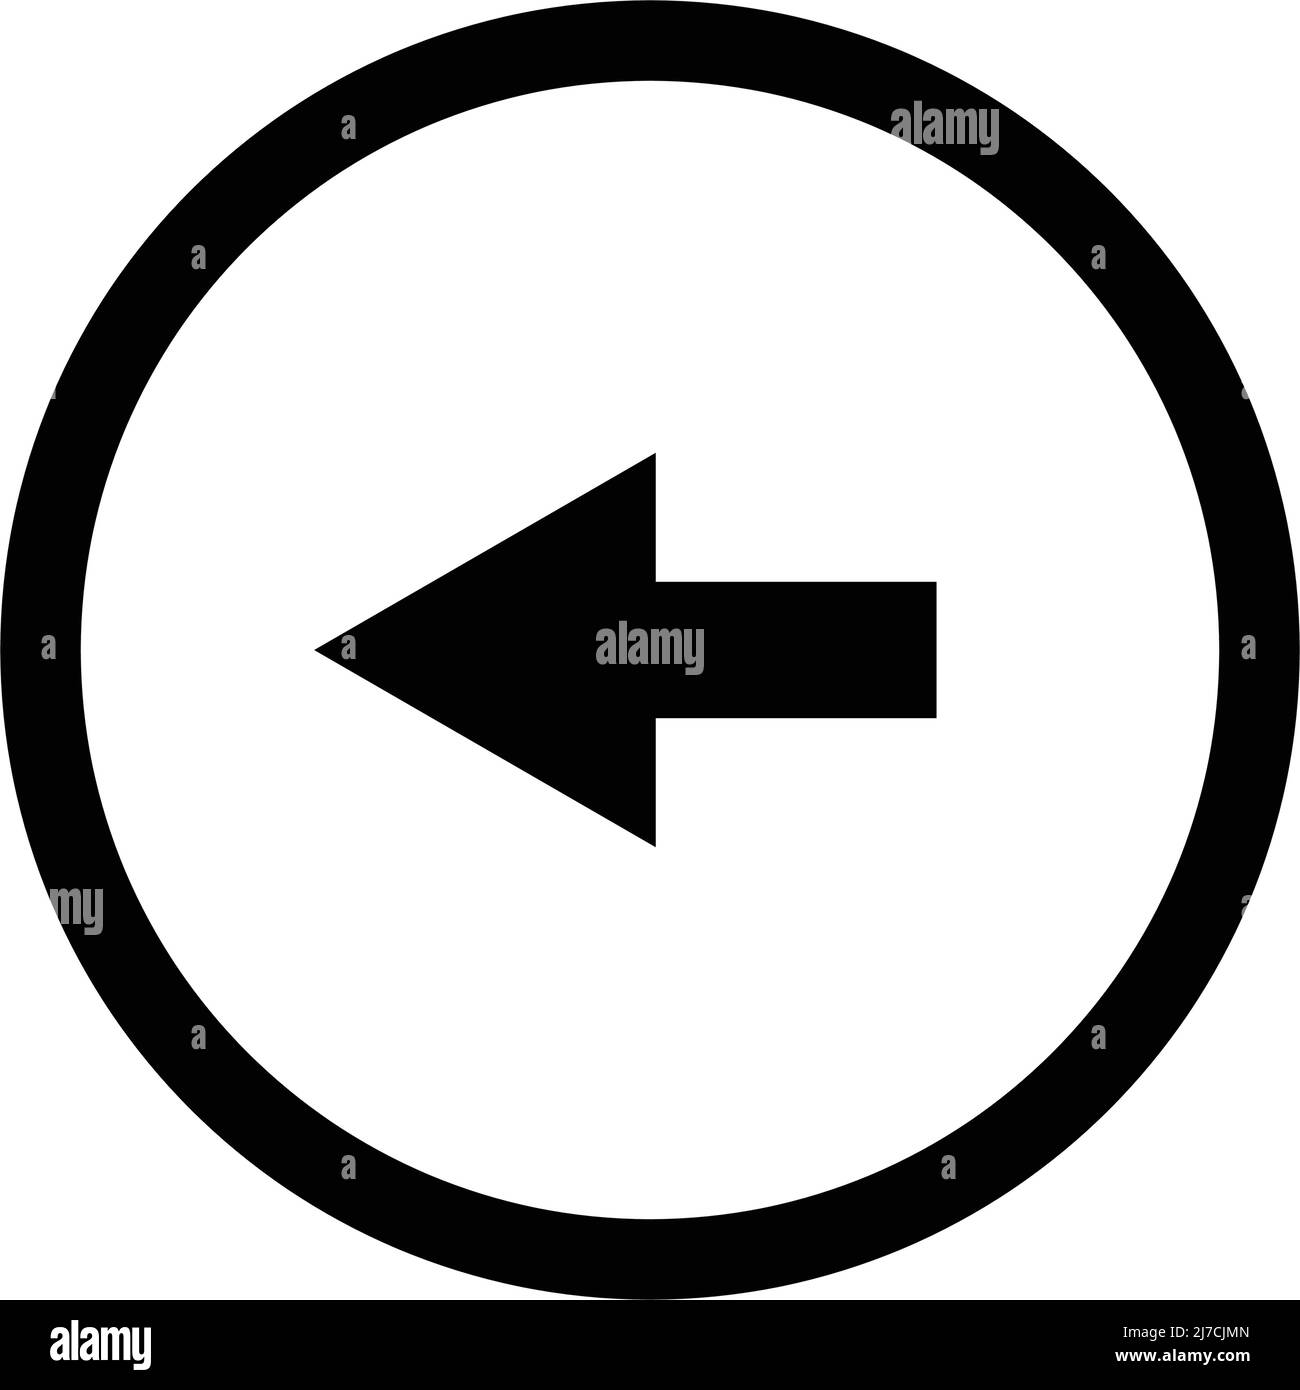 Arrow icon in a round circle. Editable vector. Stock Vector